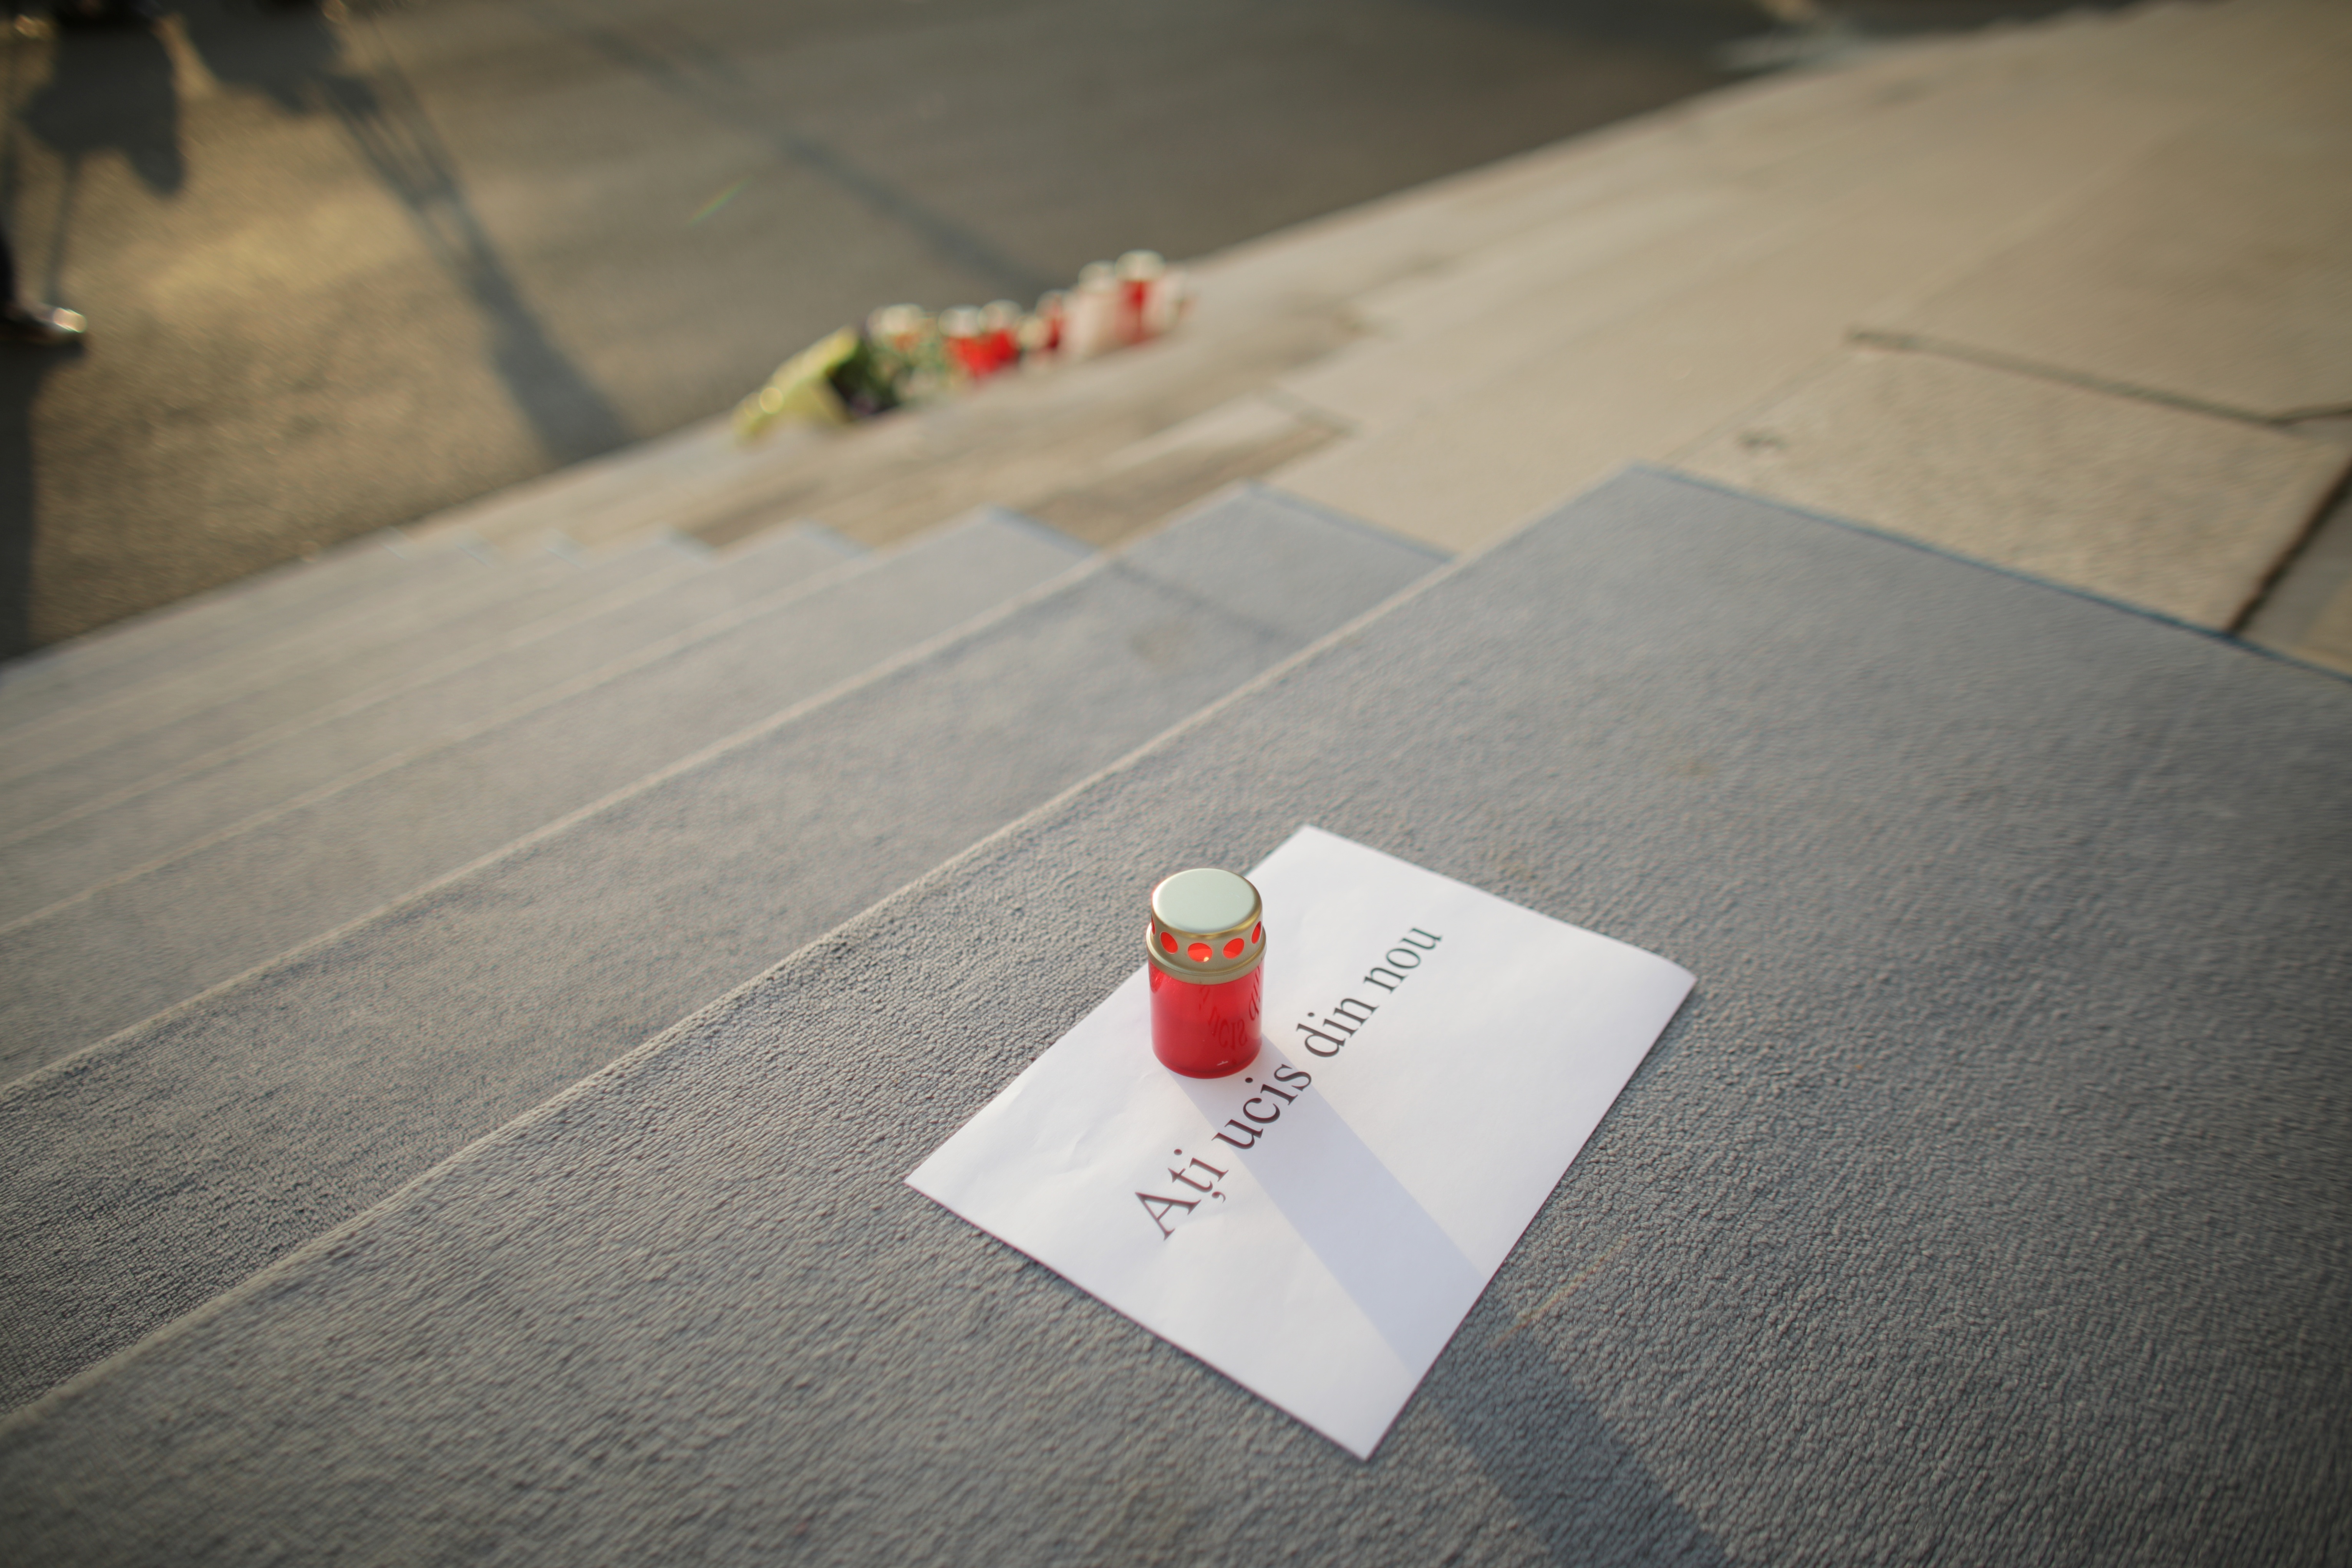 Protest tăcut la sediul MAI, după cazul Caracal. ”Ați ucis din nou”. GALERIE FOTO - Imaginea 3